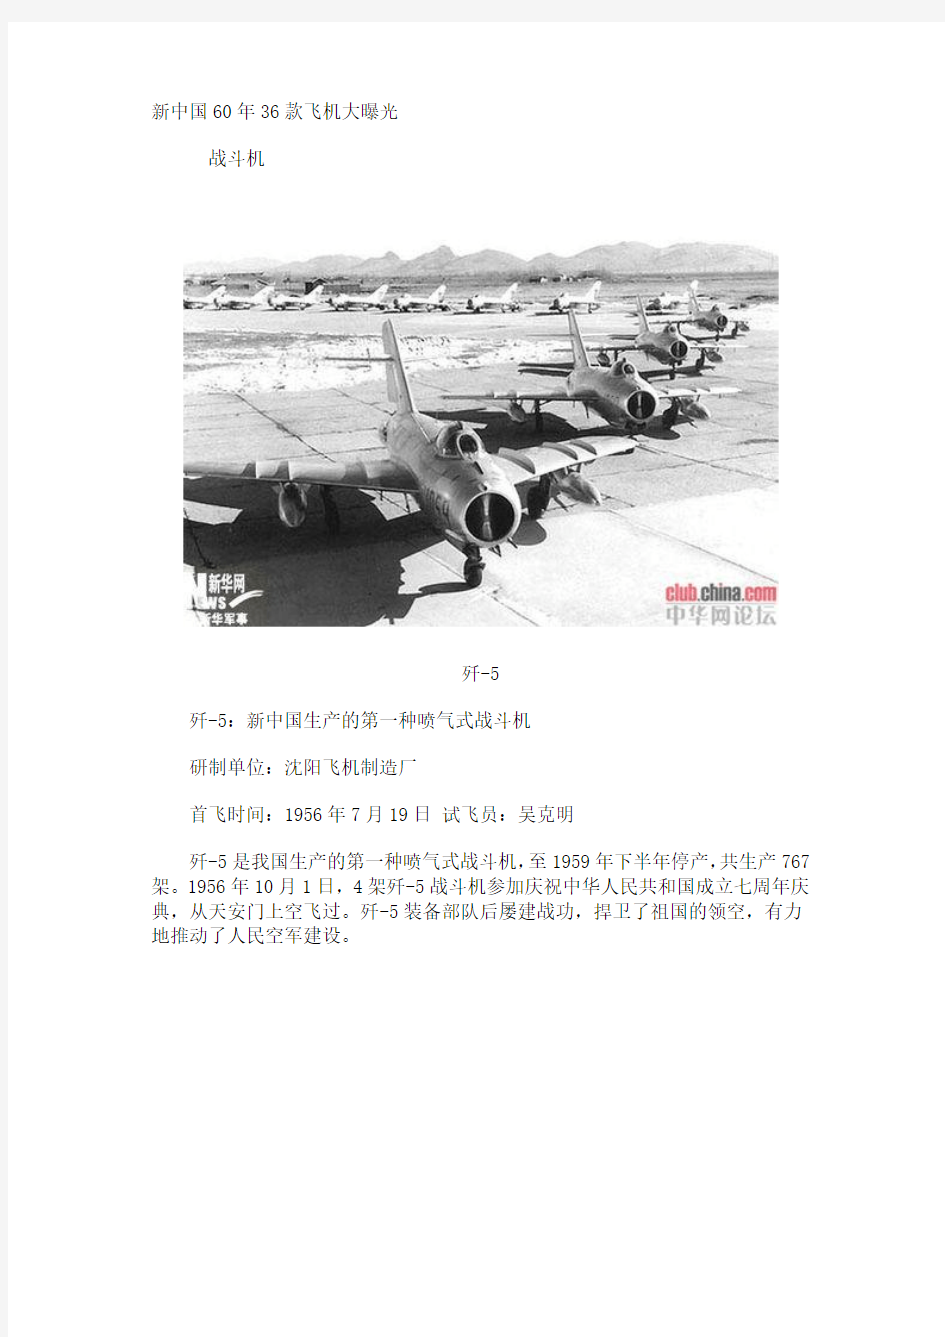 新中国60年36款飞机大曝光